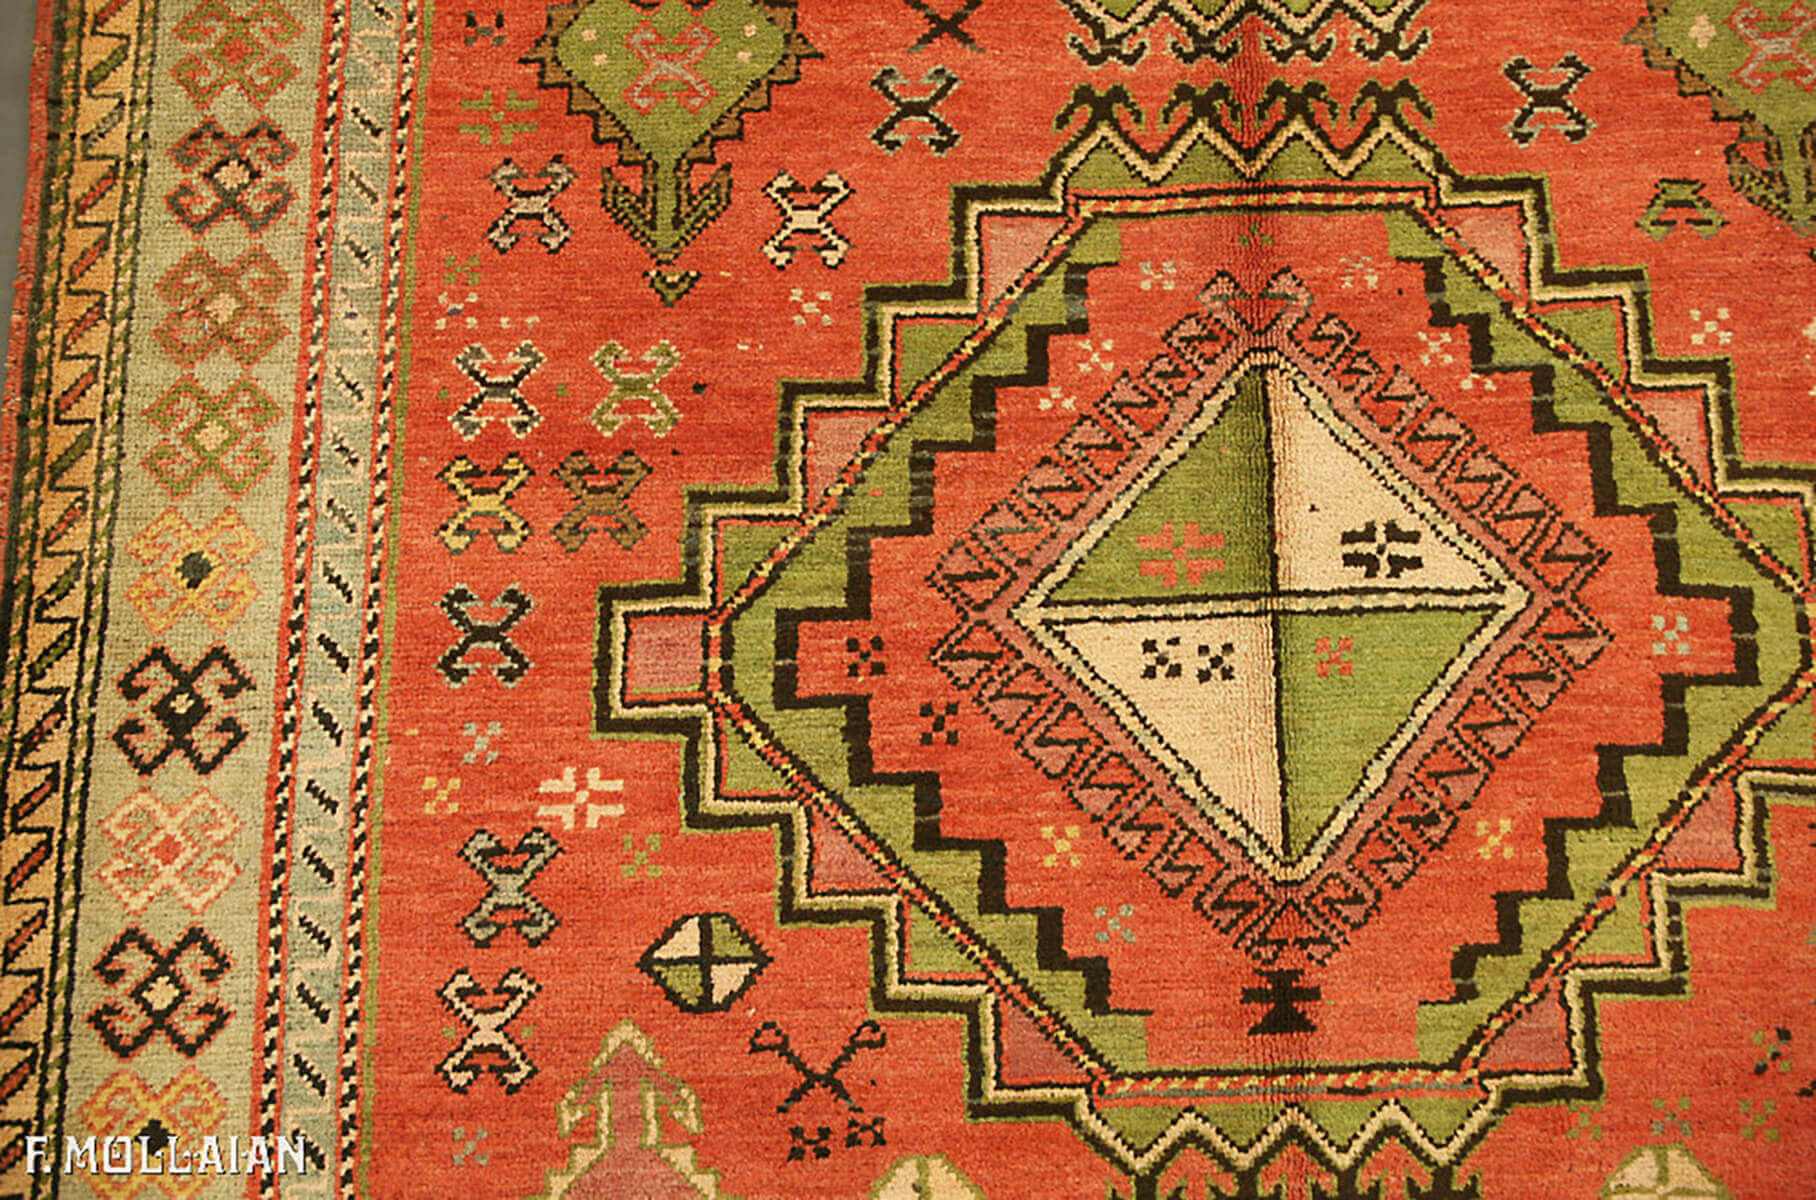 Teppich Kaukasischer Alter Karabakh (Qarabağ) n°:63854676